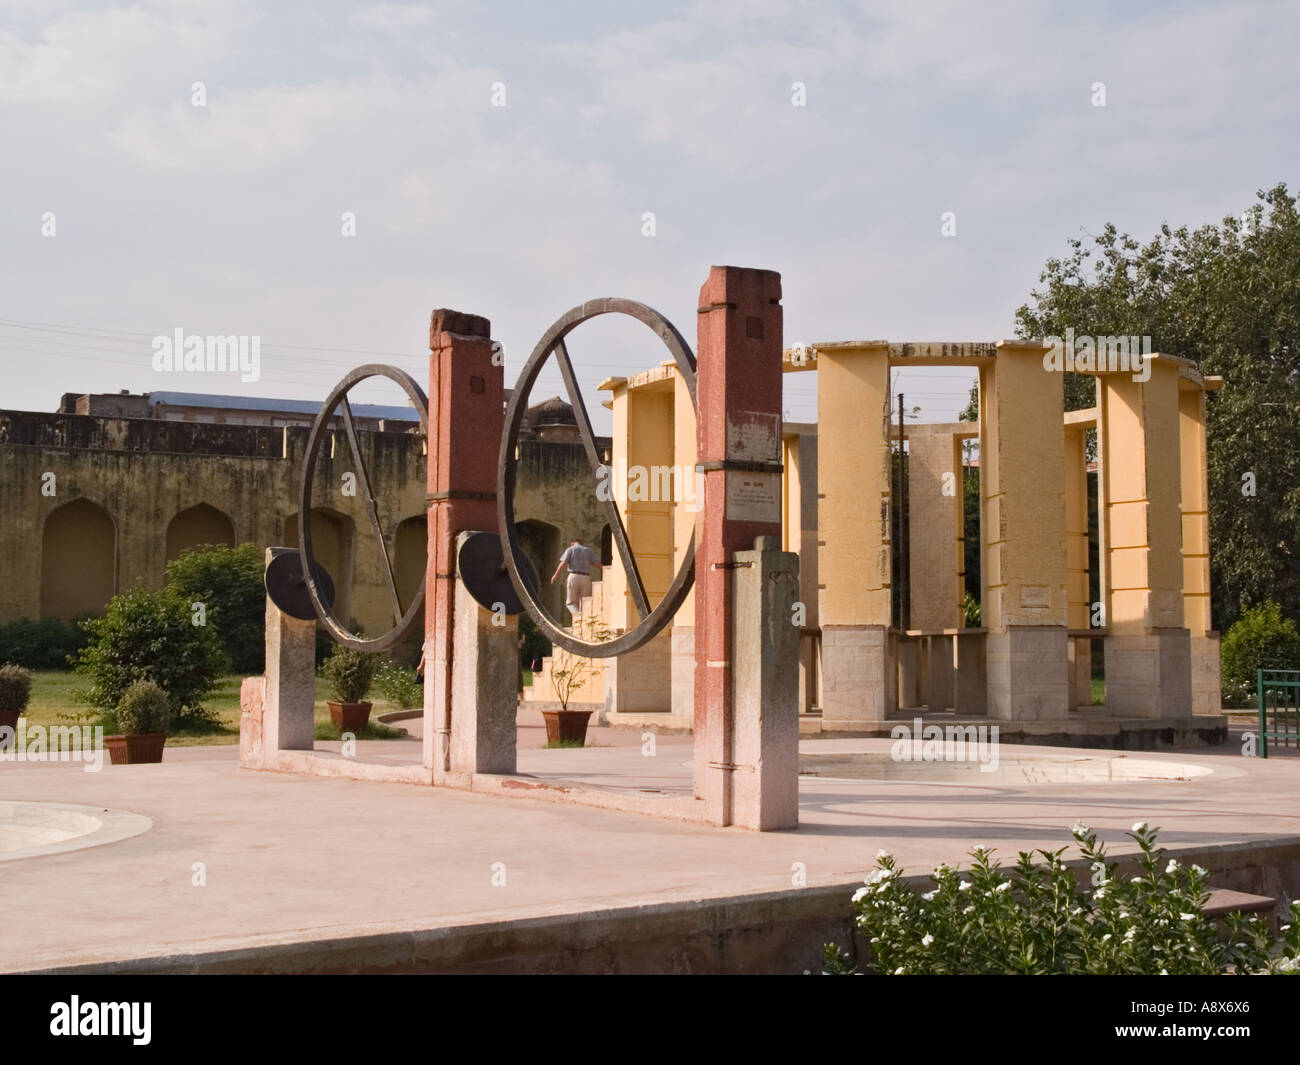 Pierre de l'observatoire Jantar Mantar instrument astronomique. Jaipur Rajasthan Inde Asie Banque D'Images